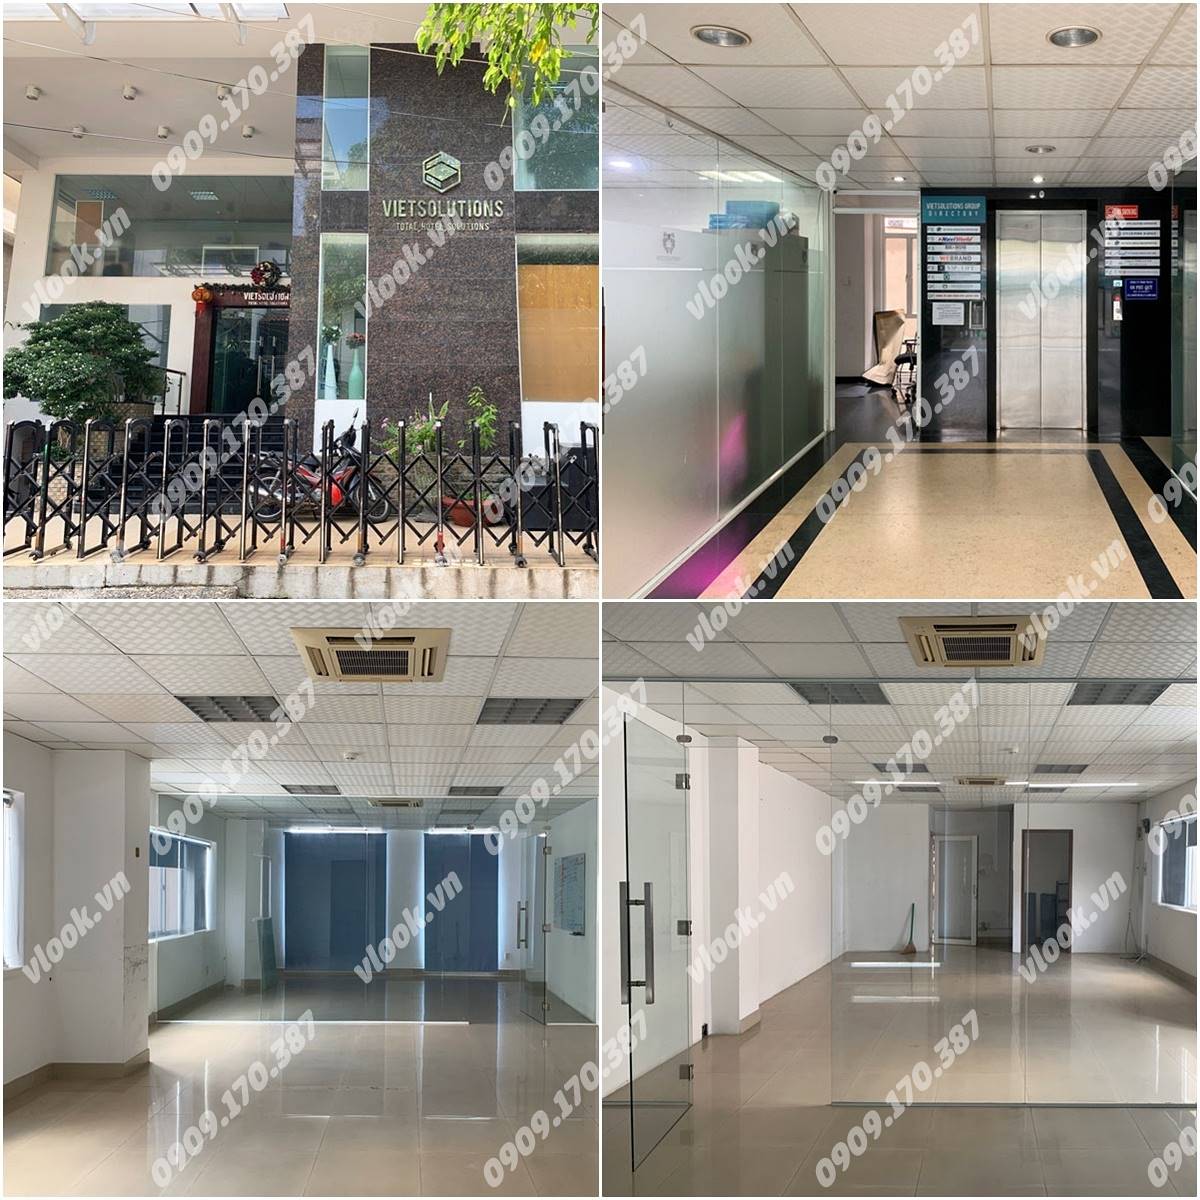 Cao ốc cho thuê văn phòng tòa nhà Viet Solution Building, Nguyễn Cửu Vân, Quận Bình Thạnh, TPHCM - vlook.vn